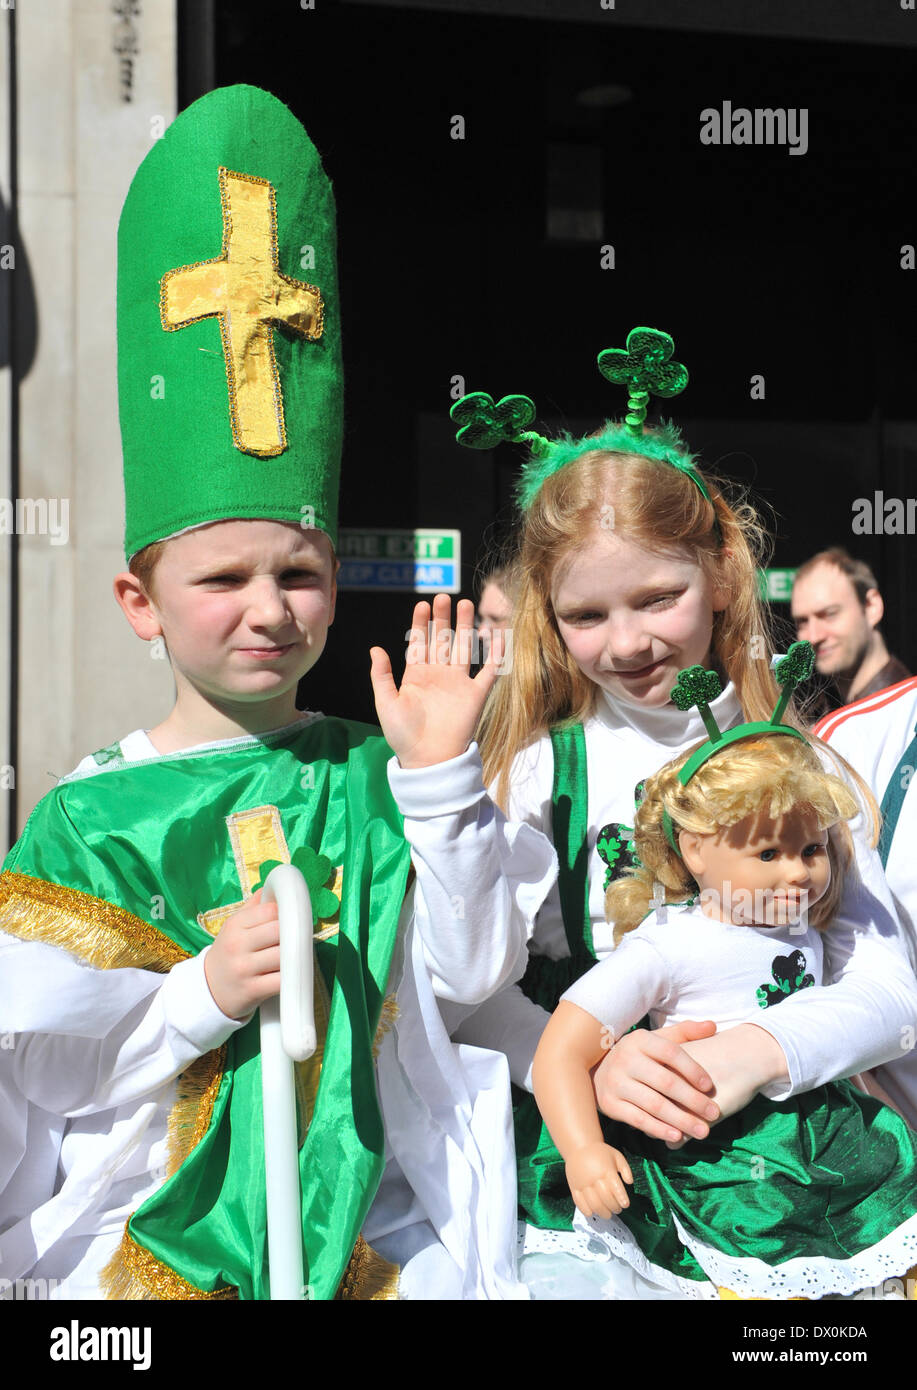 Piccadilly, Londres, Royaume-Uni. 16 mars 2014. Un jeune garçon habillé en St Patrick à la St Patrick's Day Parade à Londres. Crédit : Matthieu Chattle/Alamy Live News Banque D'Images